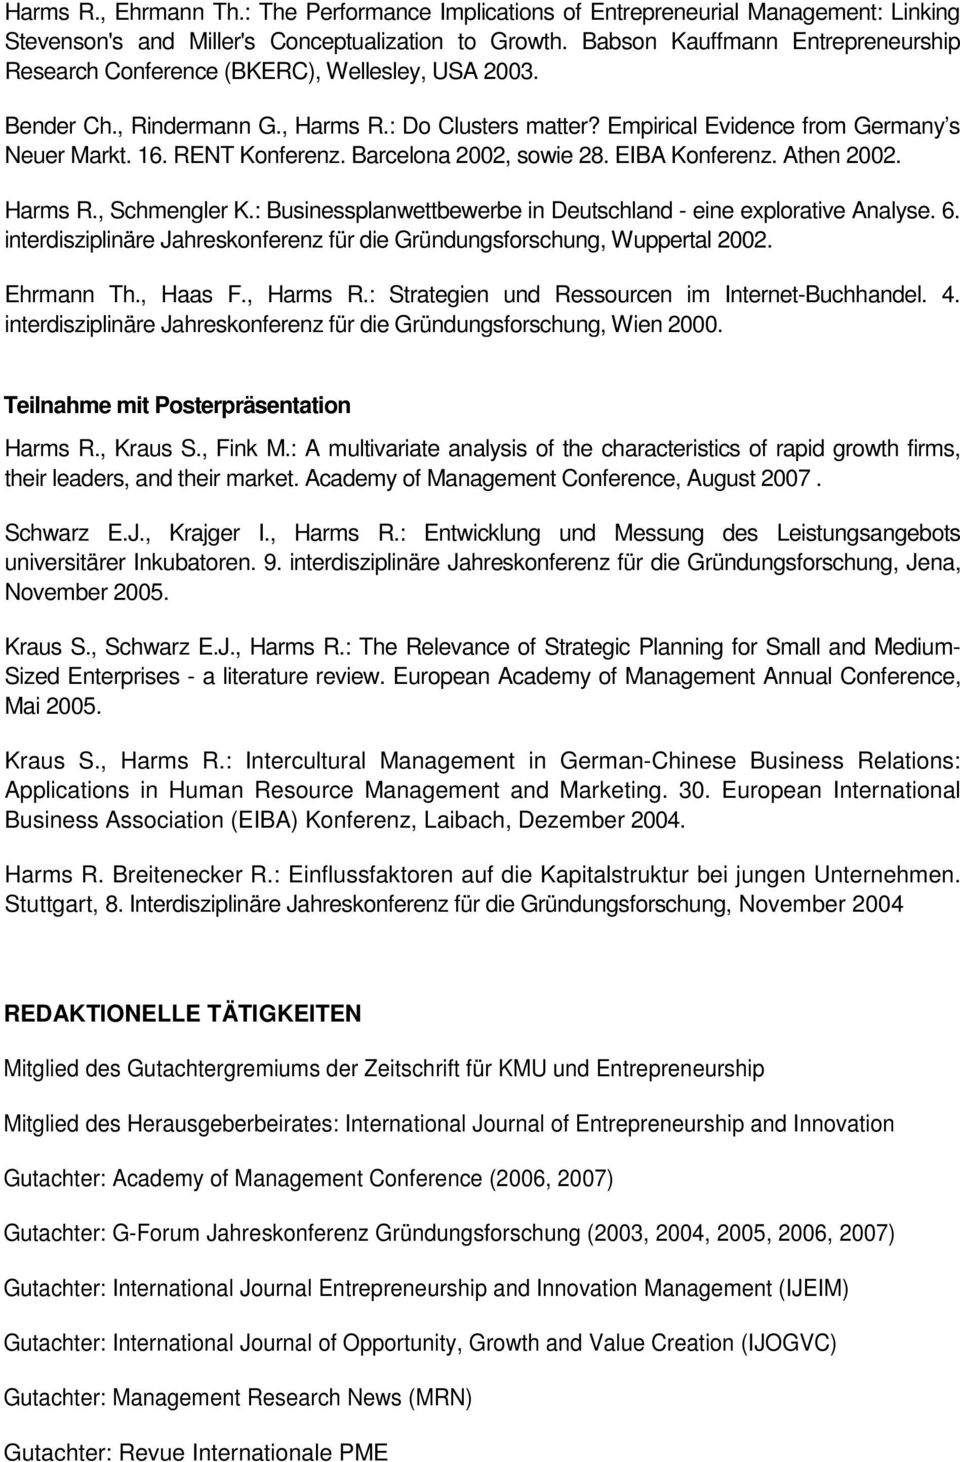 RENT Konferenz. Barcelona 2002, sowie 28. EIBA Konferenz. Athen 2002. Harms R., Schmengler K.: Businessplanwettbewerbe in Deutschland - eine explorative Analyse. 6.